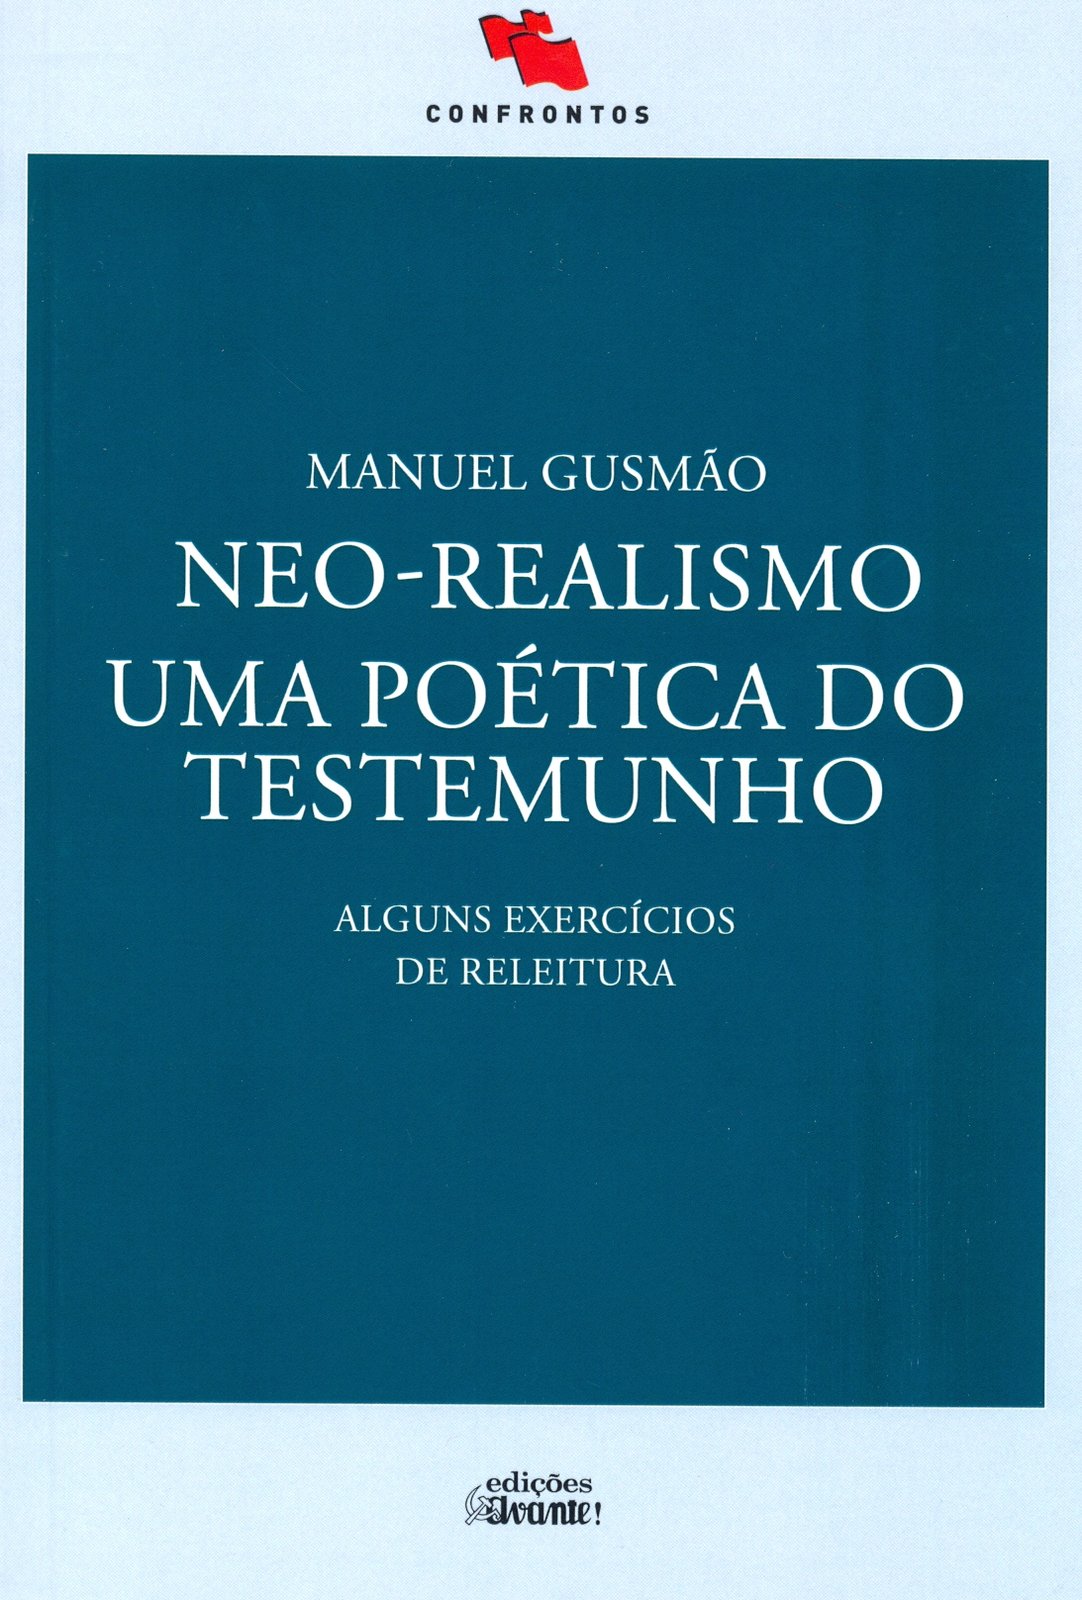 Manuel Gusmão - Neo-Realismo - Uma Poética do testemunho (alguns exercícios de releitura)